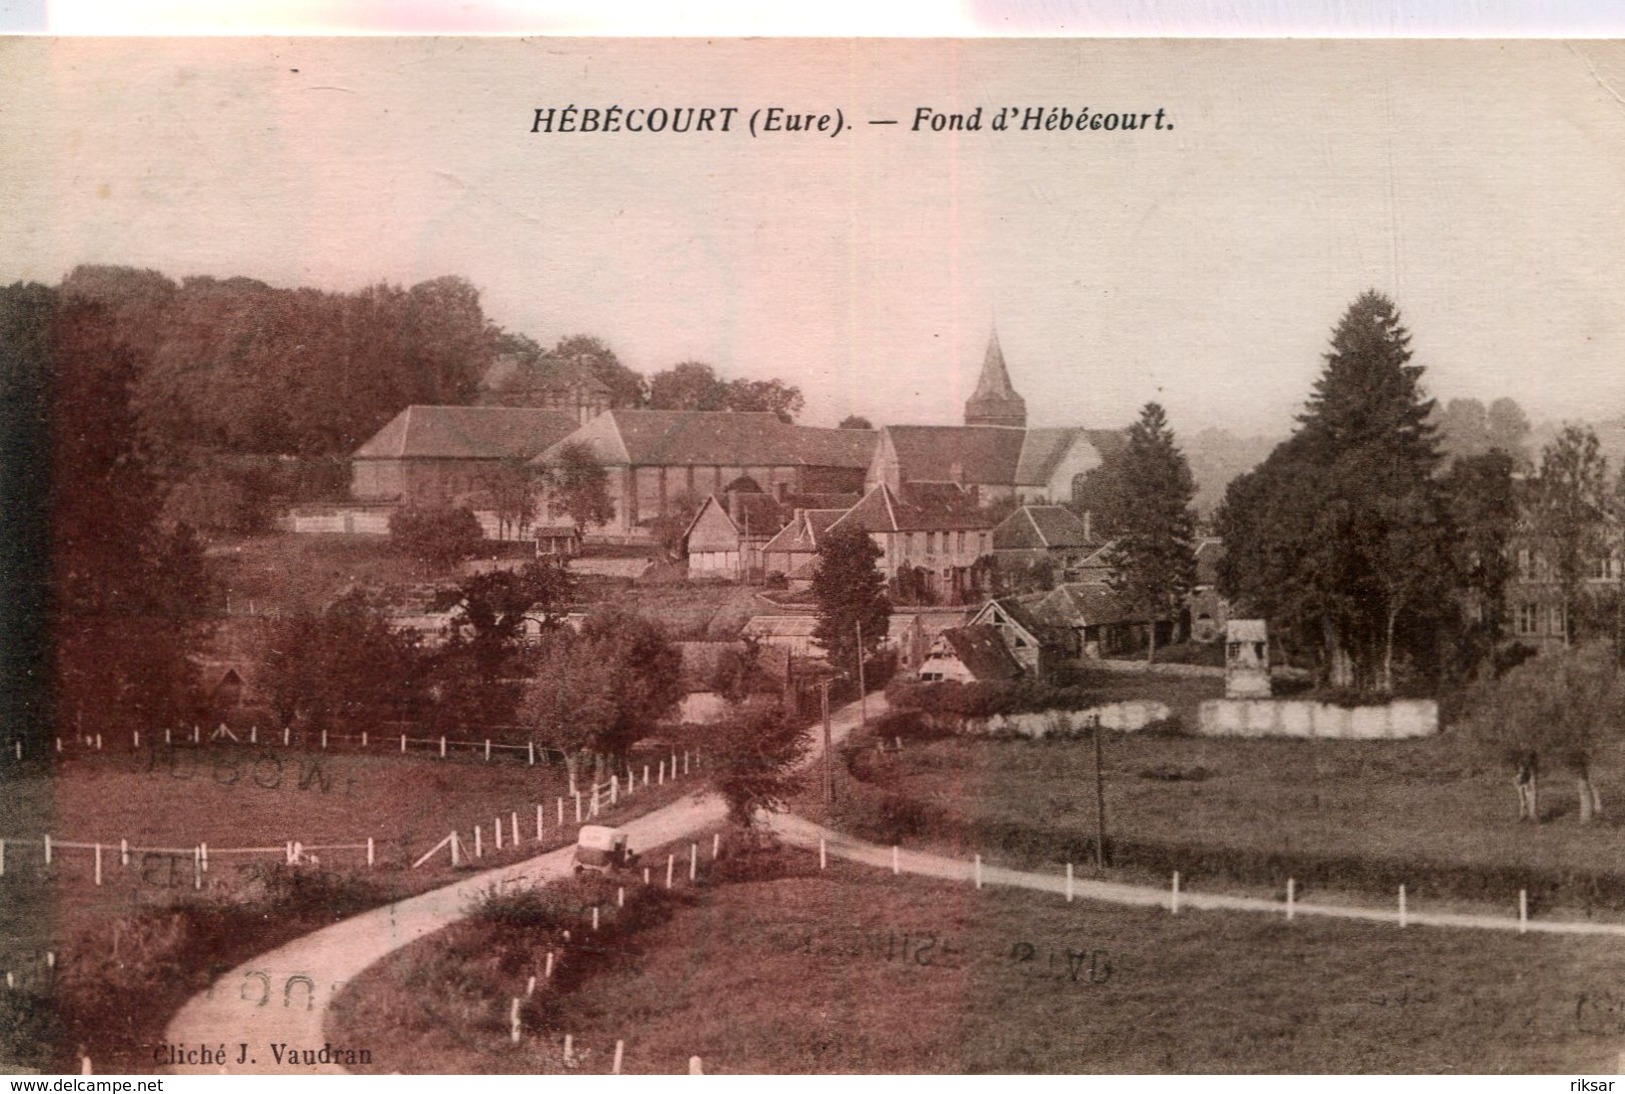 HEBECOURT - Hébécourt